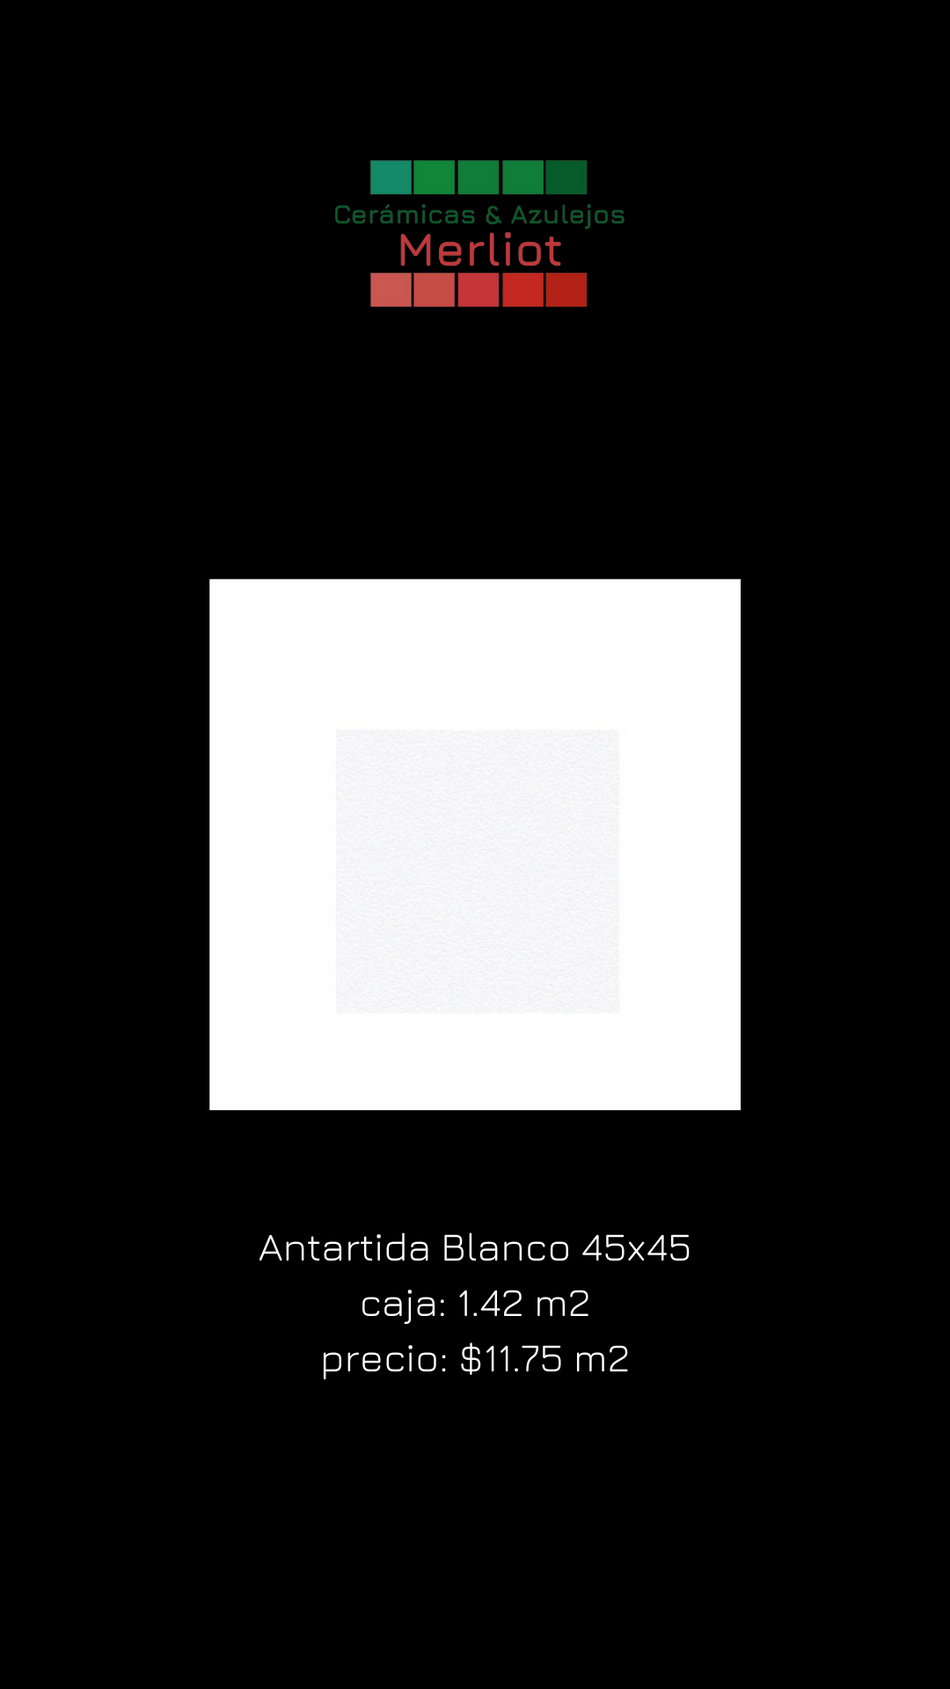 Antartida Blanco 45x45